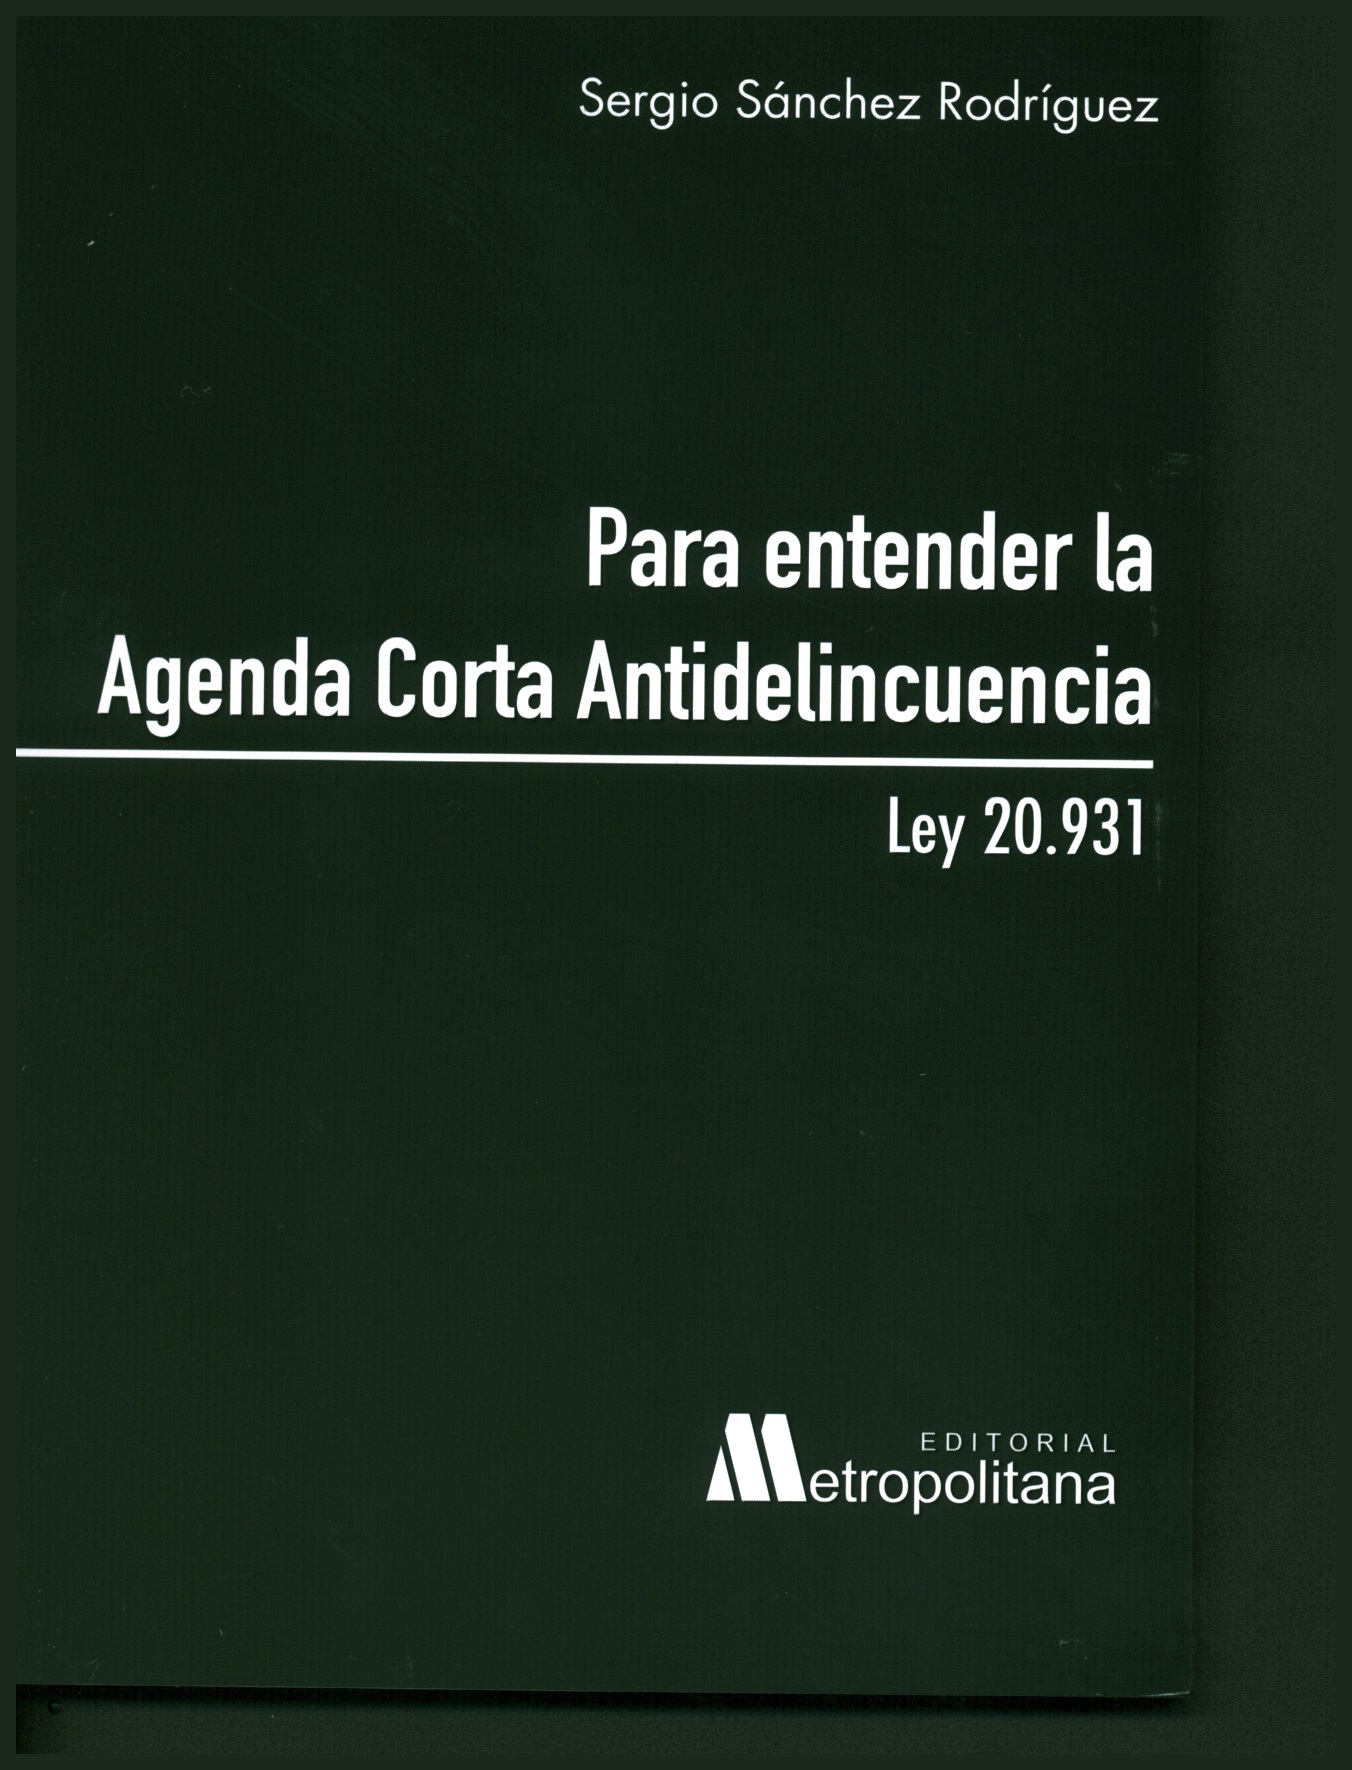 Para entender la agenda antidelincuencia ( ley 20.931)